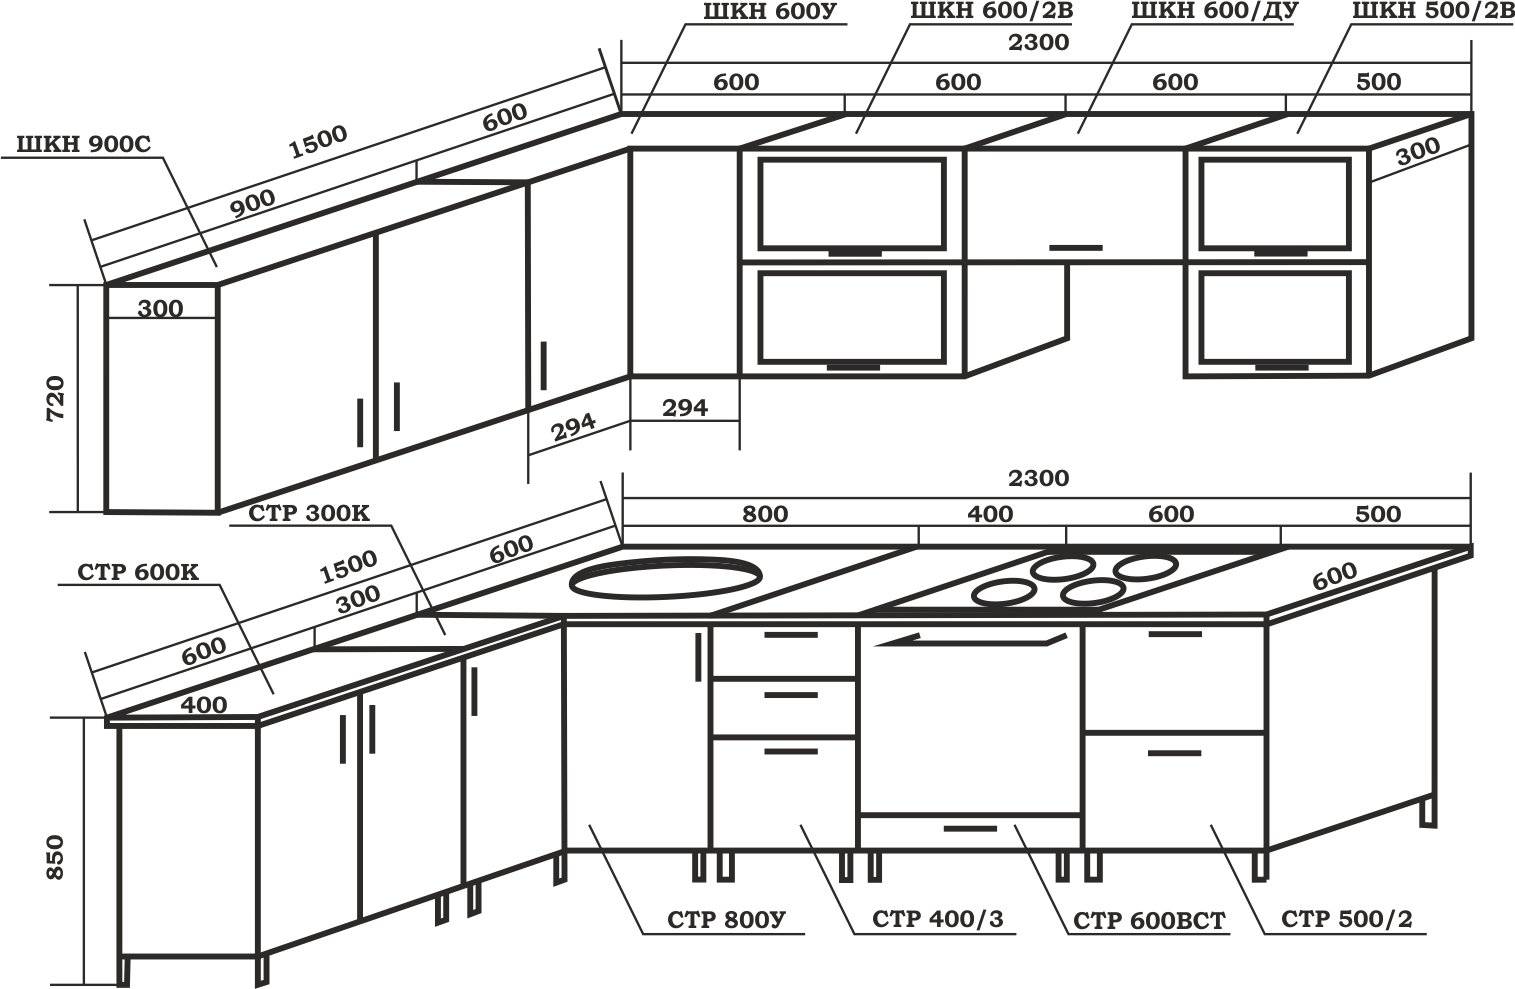 Стандартные размеры кухонной мебели: высота, ширина и глубина кухонного гарнитура